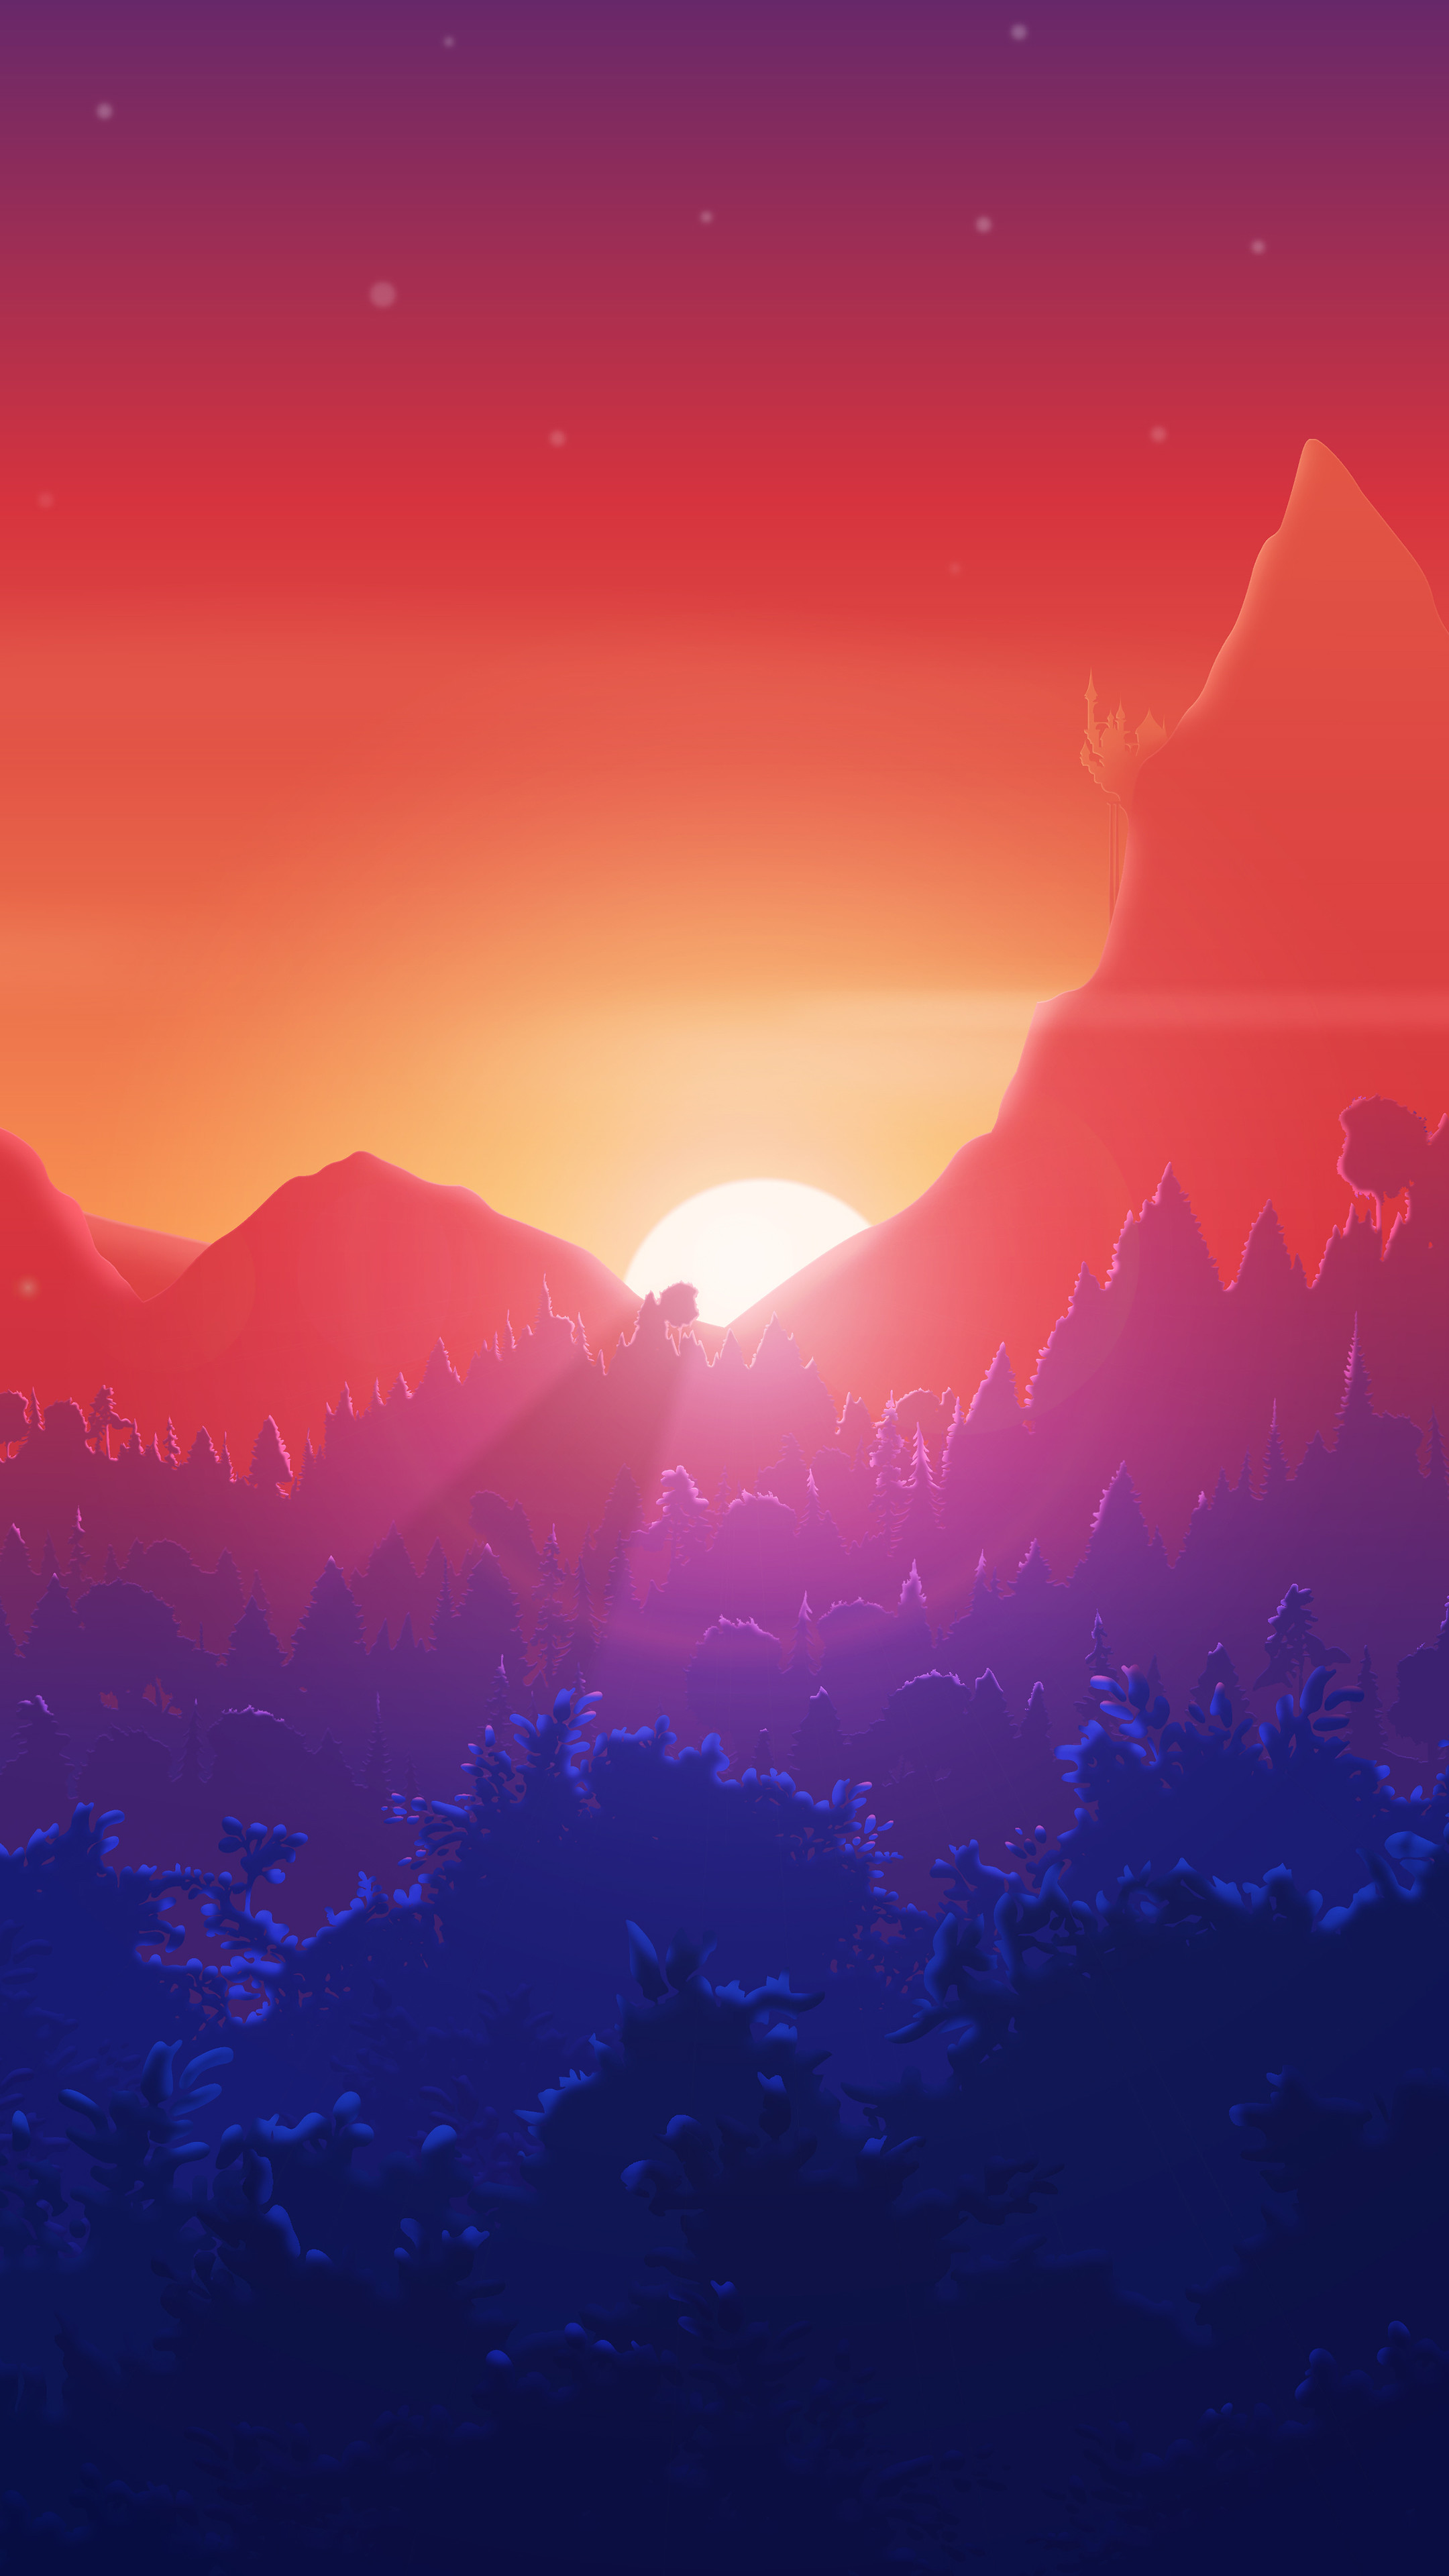 Sunset Digital Art 8k Wallpaper